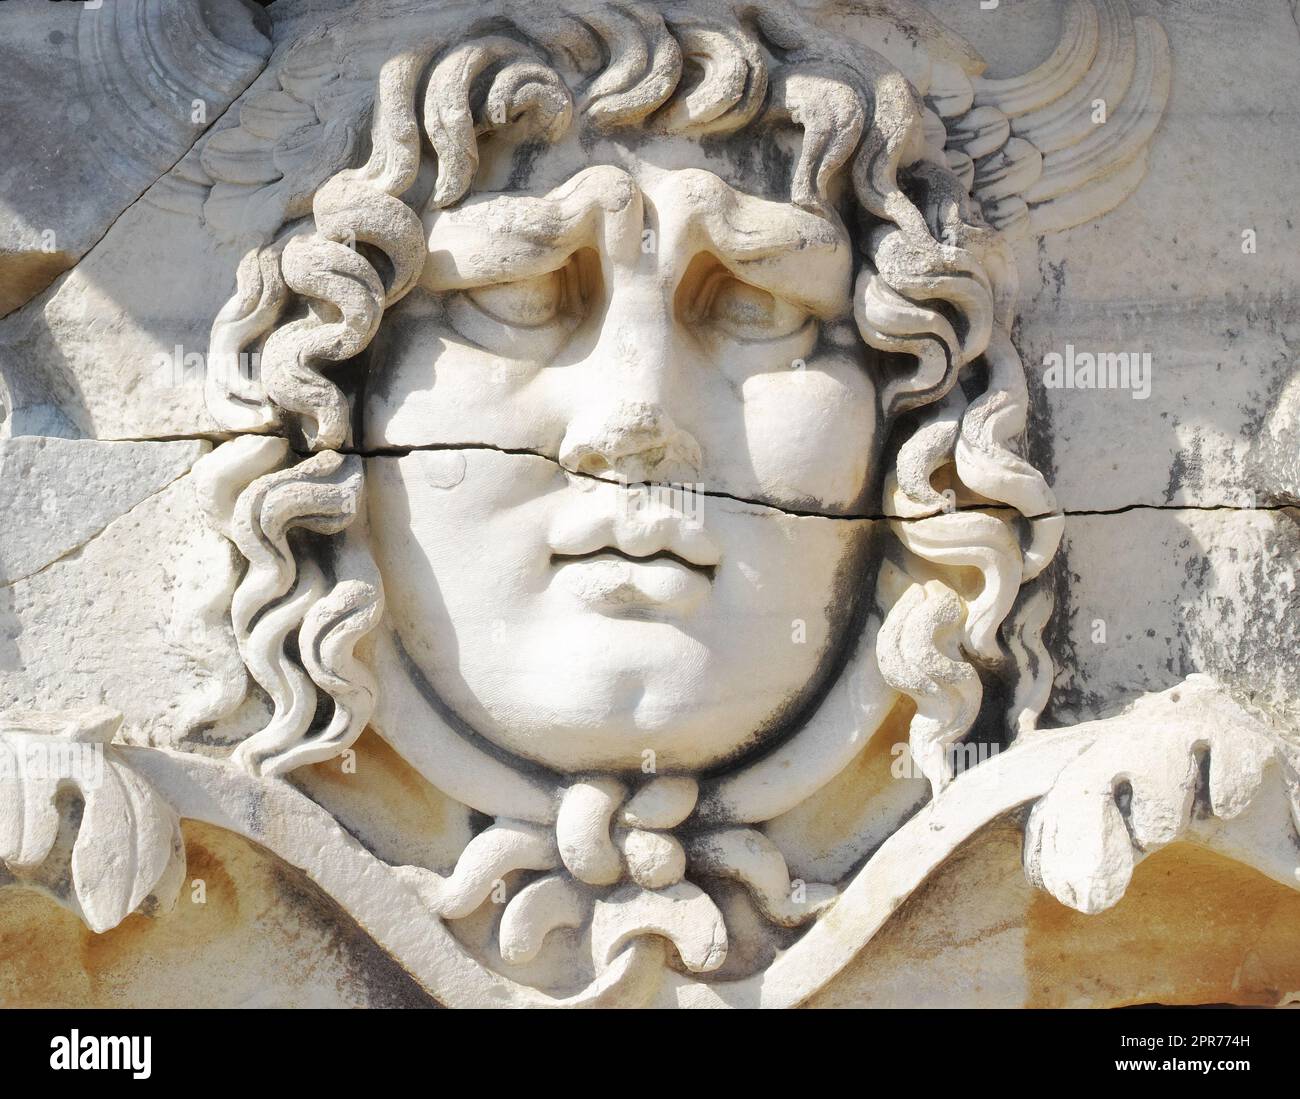 Gros plan d'un visage sculpté sur du marbre de style classique par les Grecs anciens au Temple d'Apollon à Didyma. Un impressionnant sanctuaire en ruines ou statue dans la ville hellénique de Miletus, dans le sud-ouest de la Turquie Banque D'Images